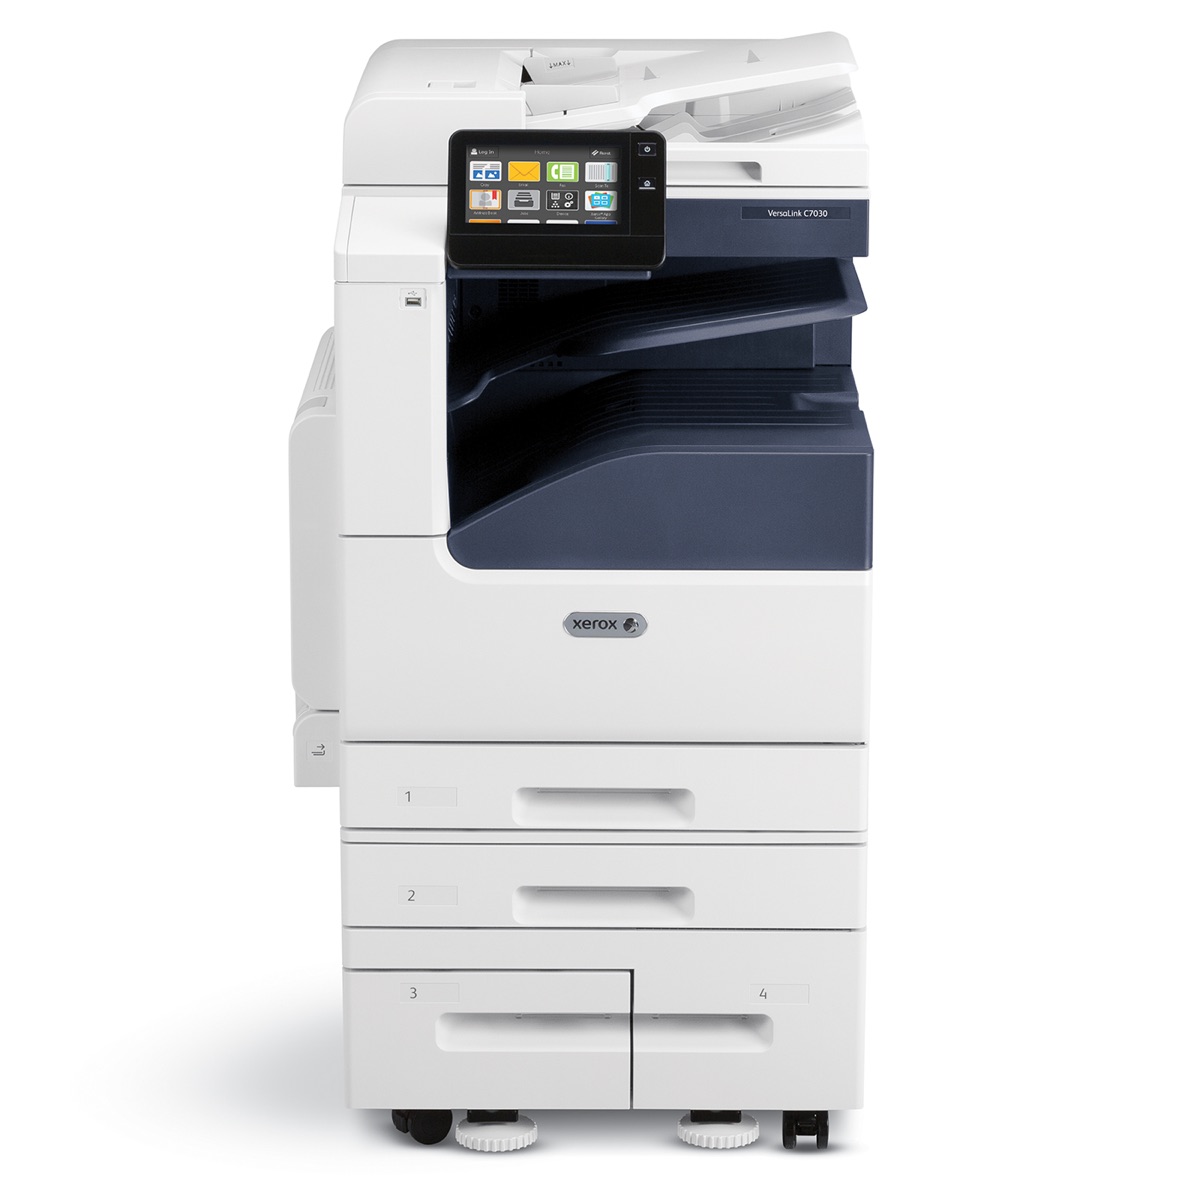 Xerox Copiers:  The Xerox VersaLink C7030/DS2 Copier